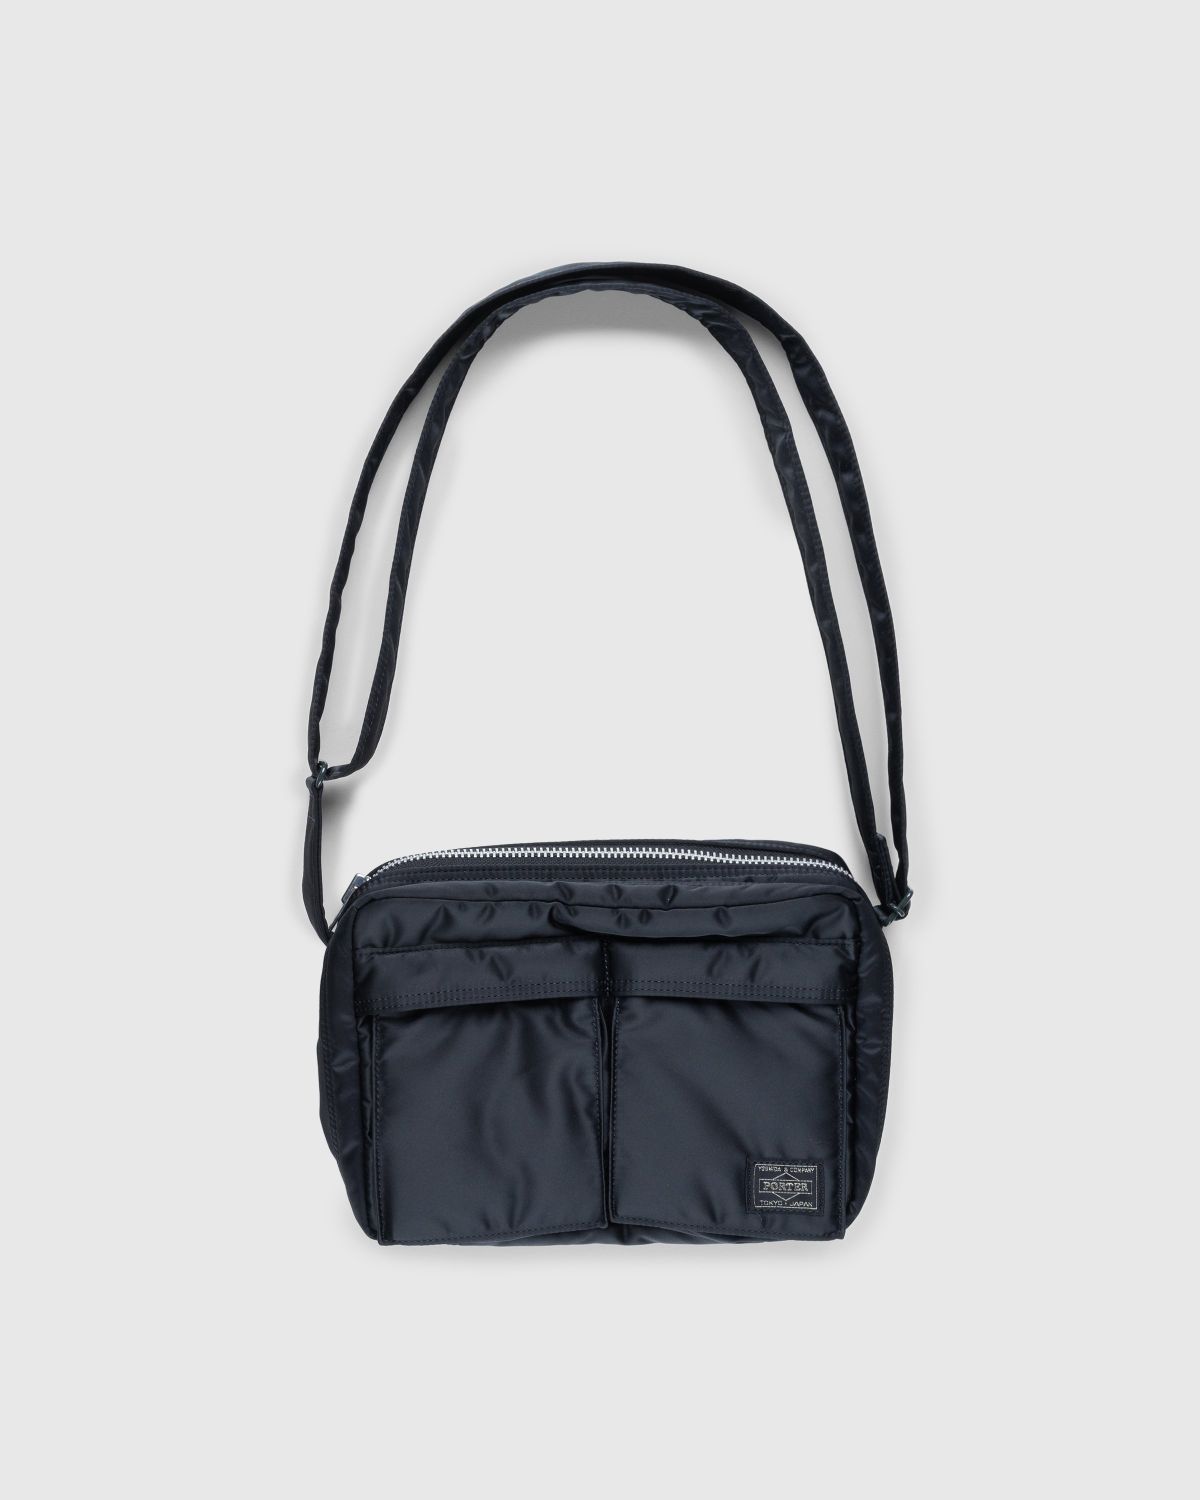 Porter-Yoshida & Co. – Tanker Shoulder Bag Black | Highsnobiety Shop